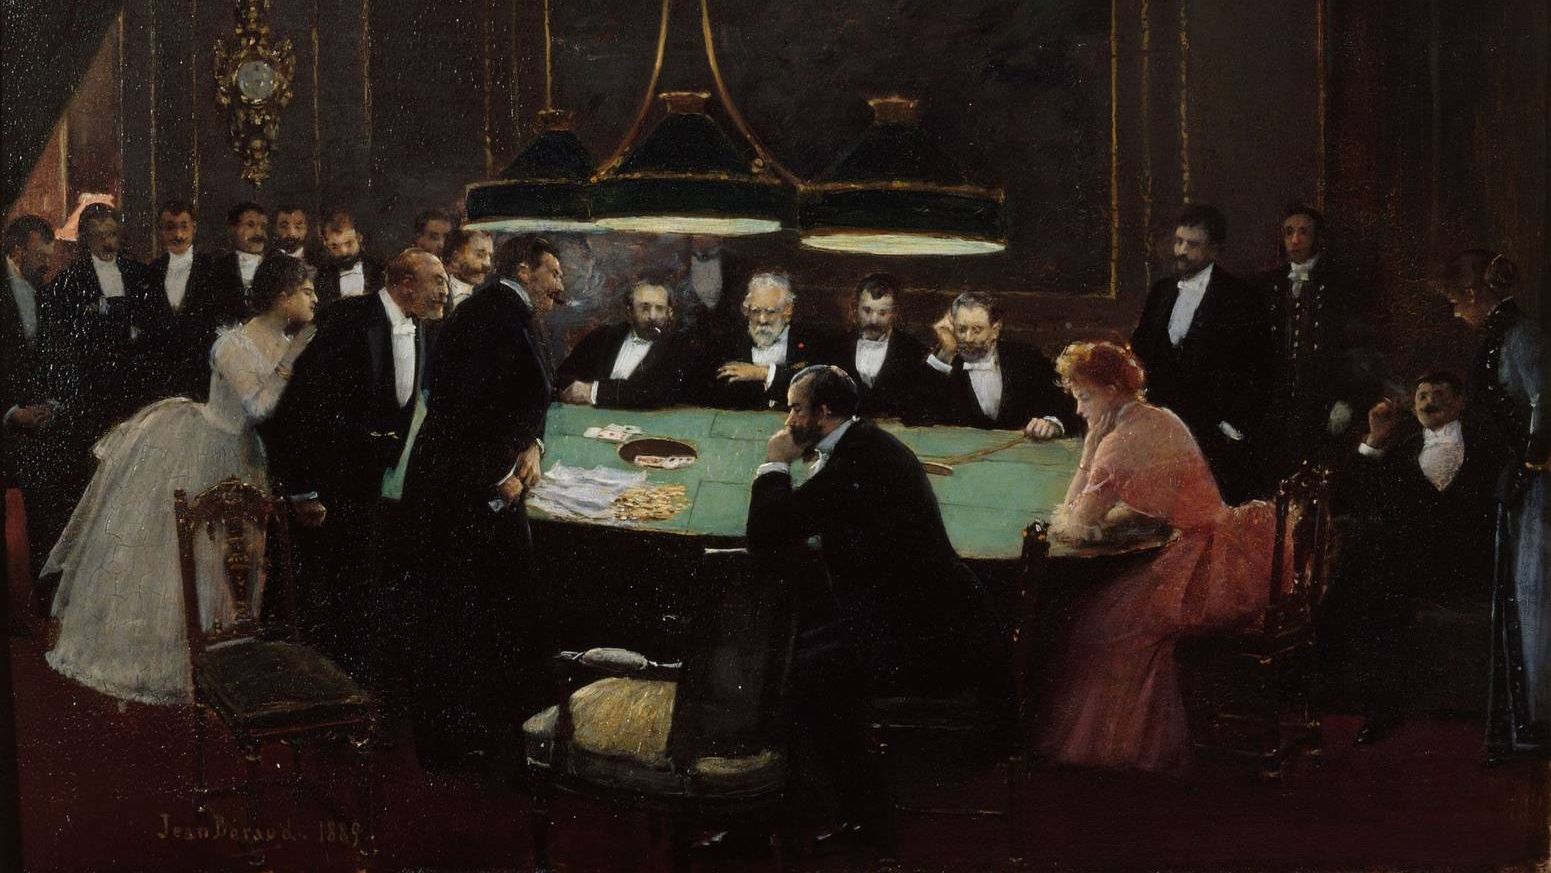 Жан Беро. Зал для игры в казино. 1889